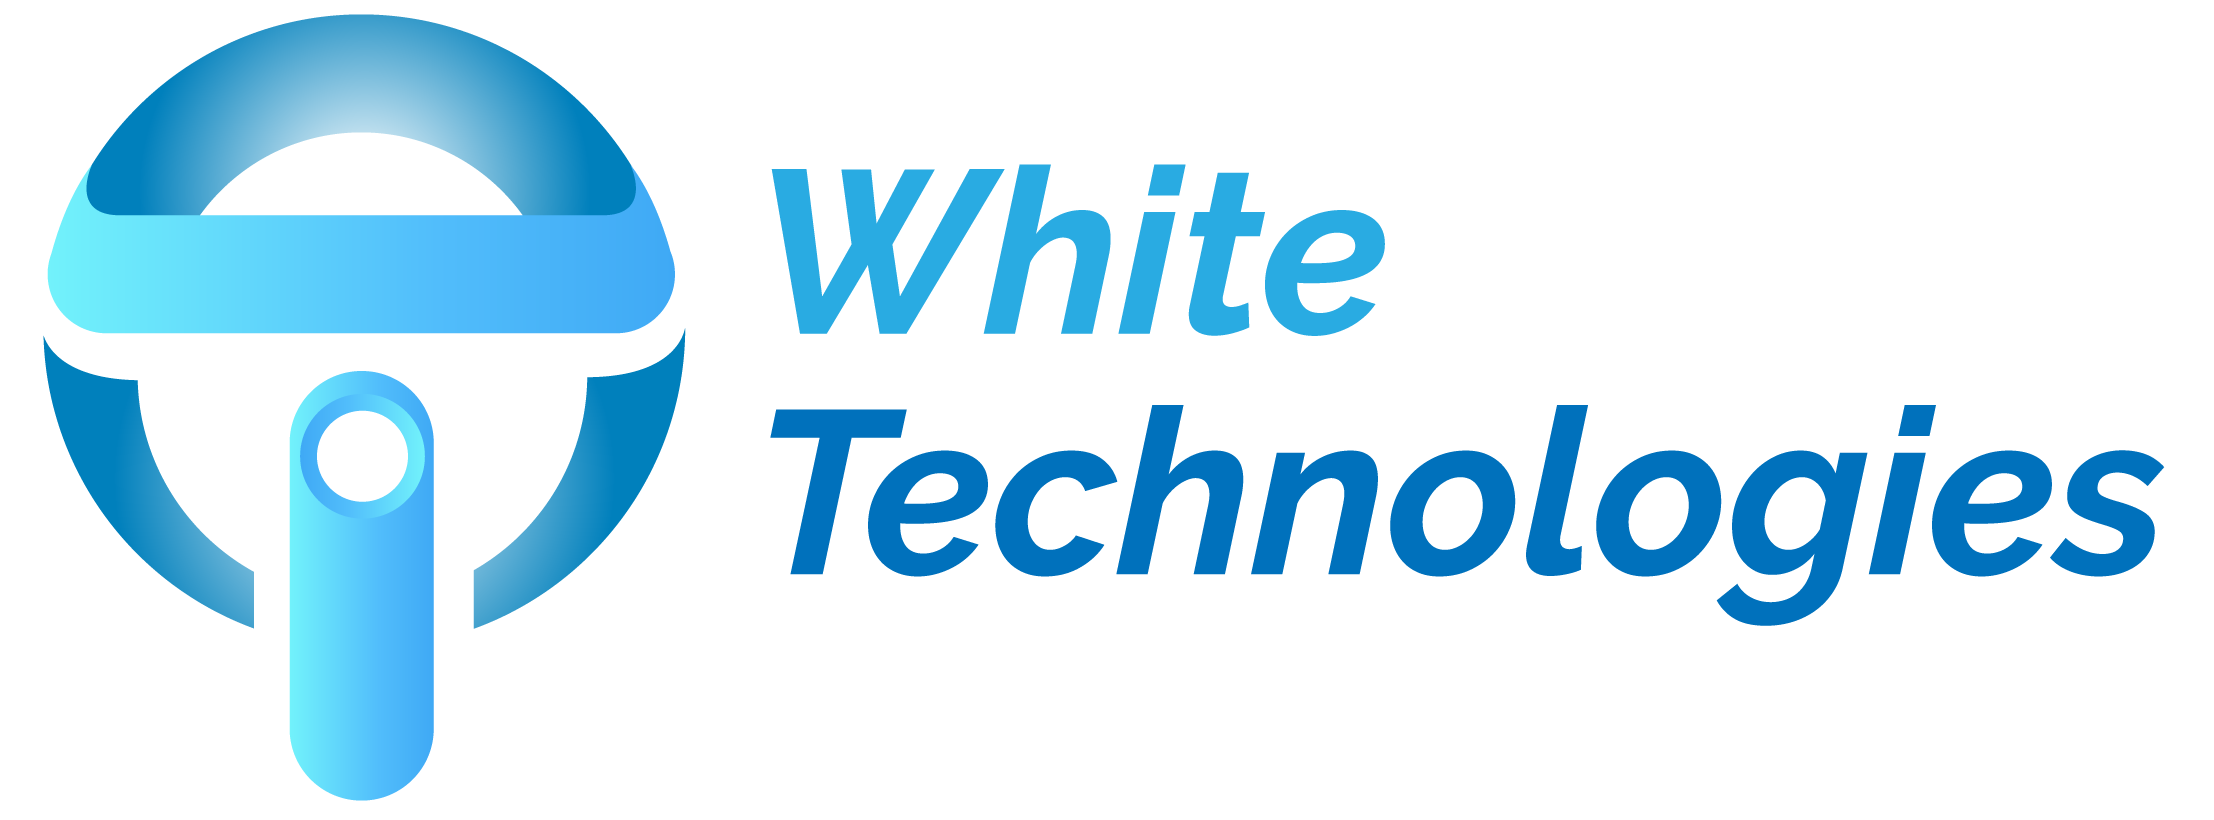 IOT - White Technologies